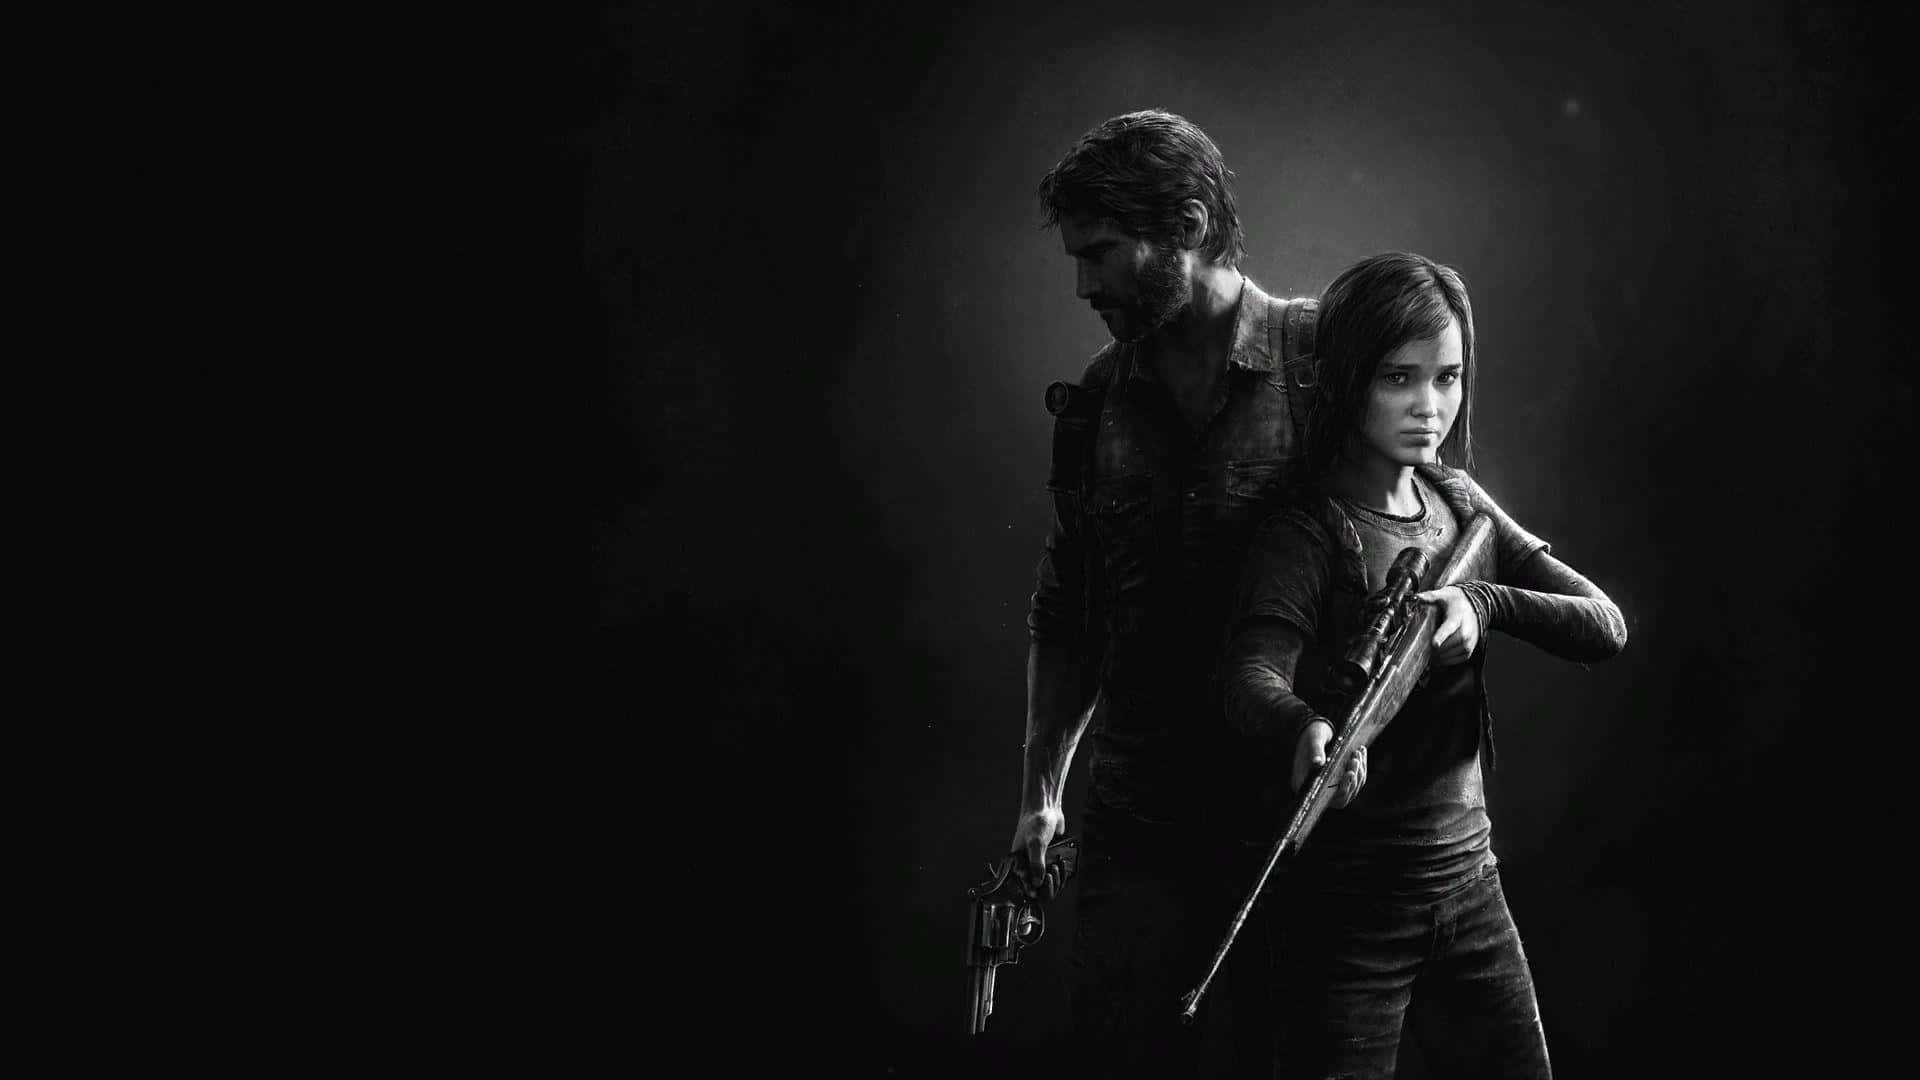 Elliee Joel Si Avventurano In Un Desolato Mondo Post-apocalittico In The Last Of Us.